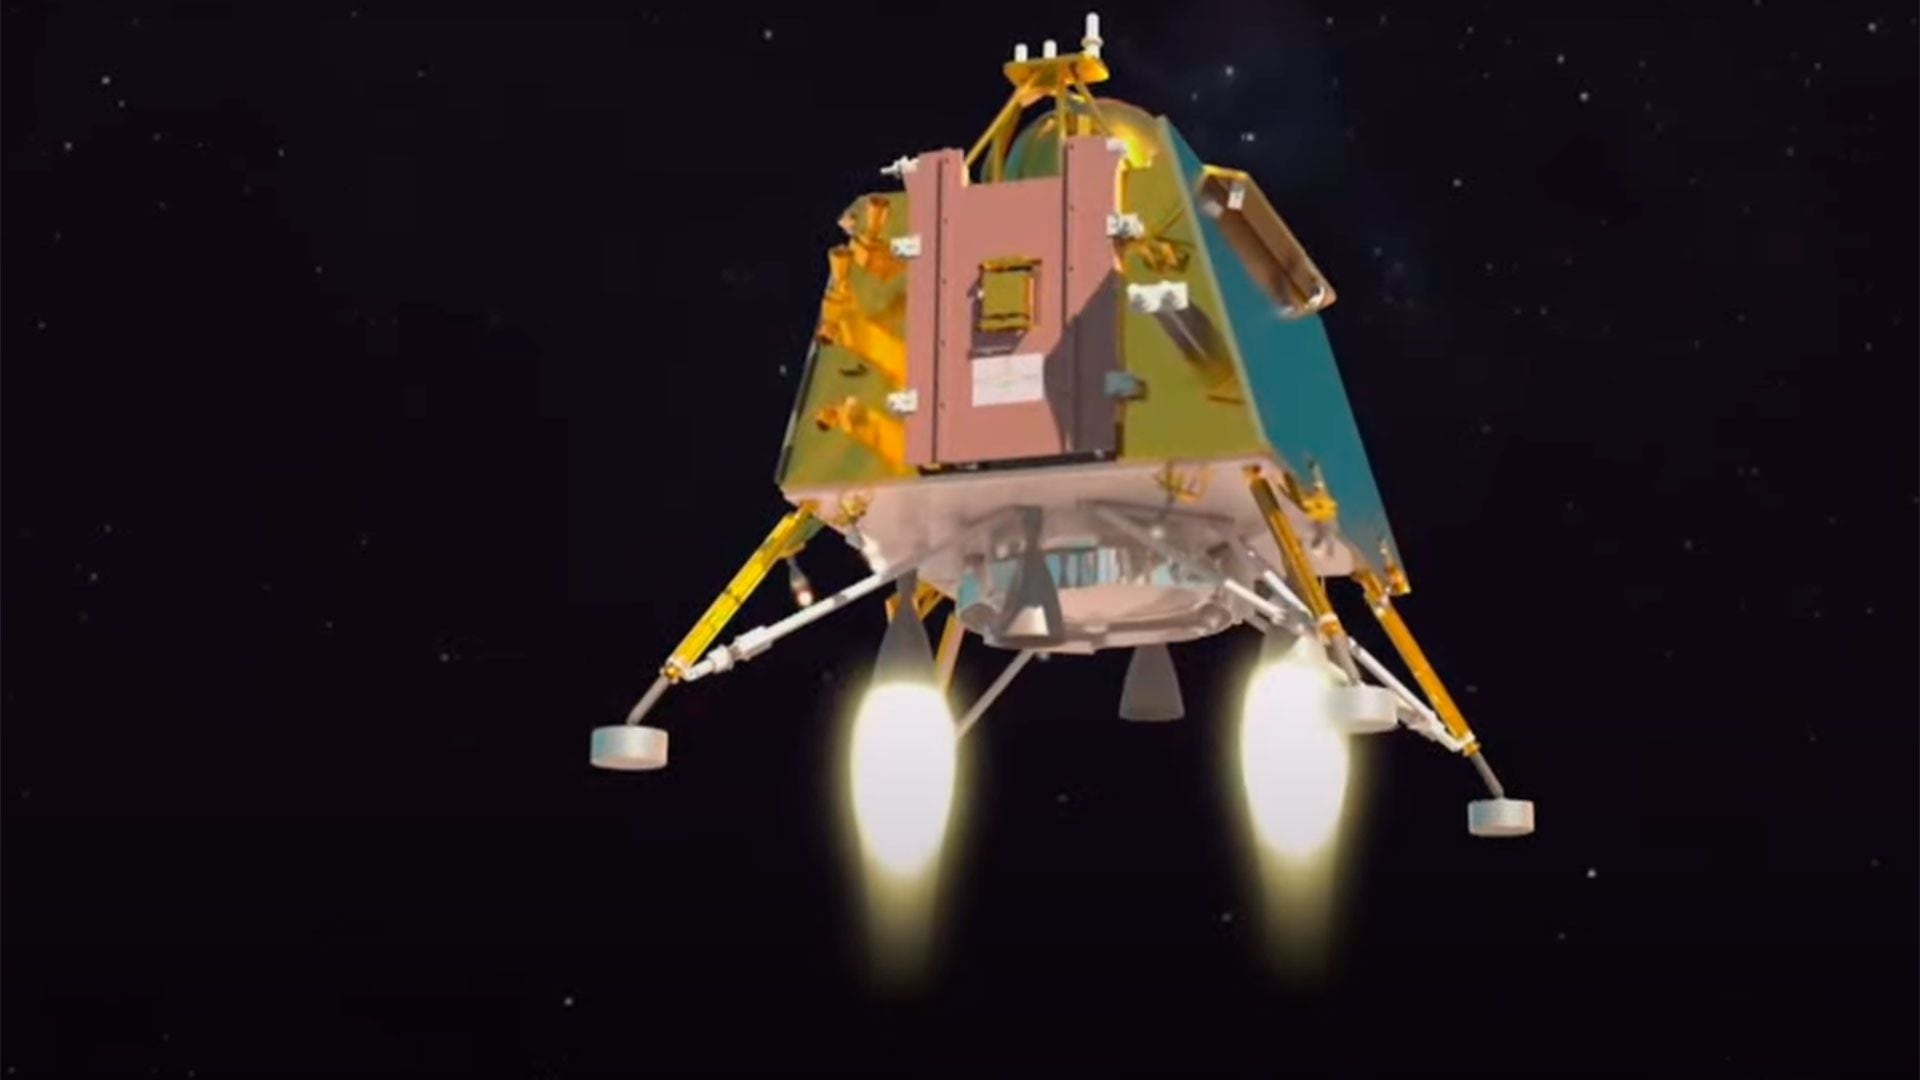 La sonda india abrirá una nueva etapa de exploración de la Luna, marcada por el creciente interés de varios países por retomar sus programas lunares para mandar misiones tripuladas o establecer bases en el satélite terrestre (ISRO)